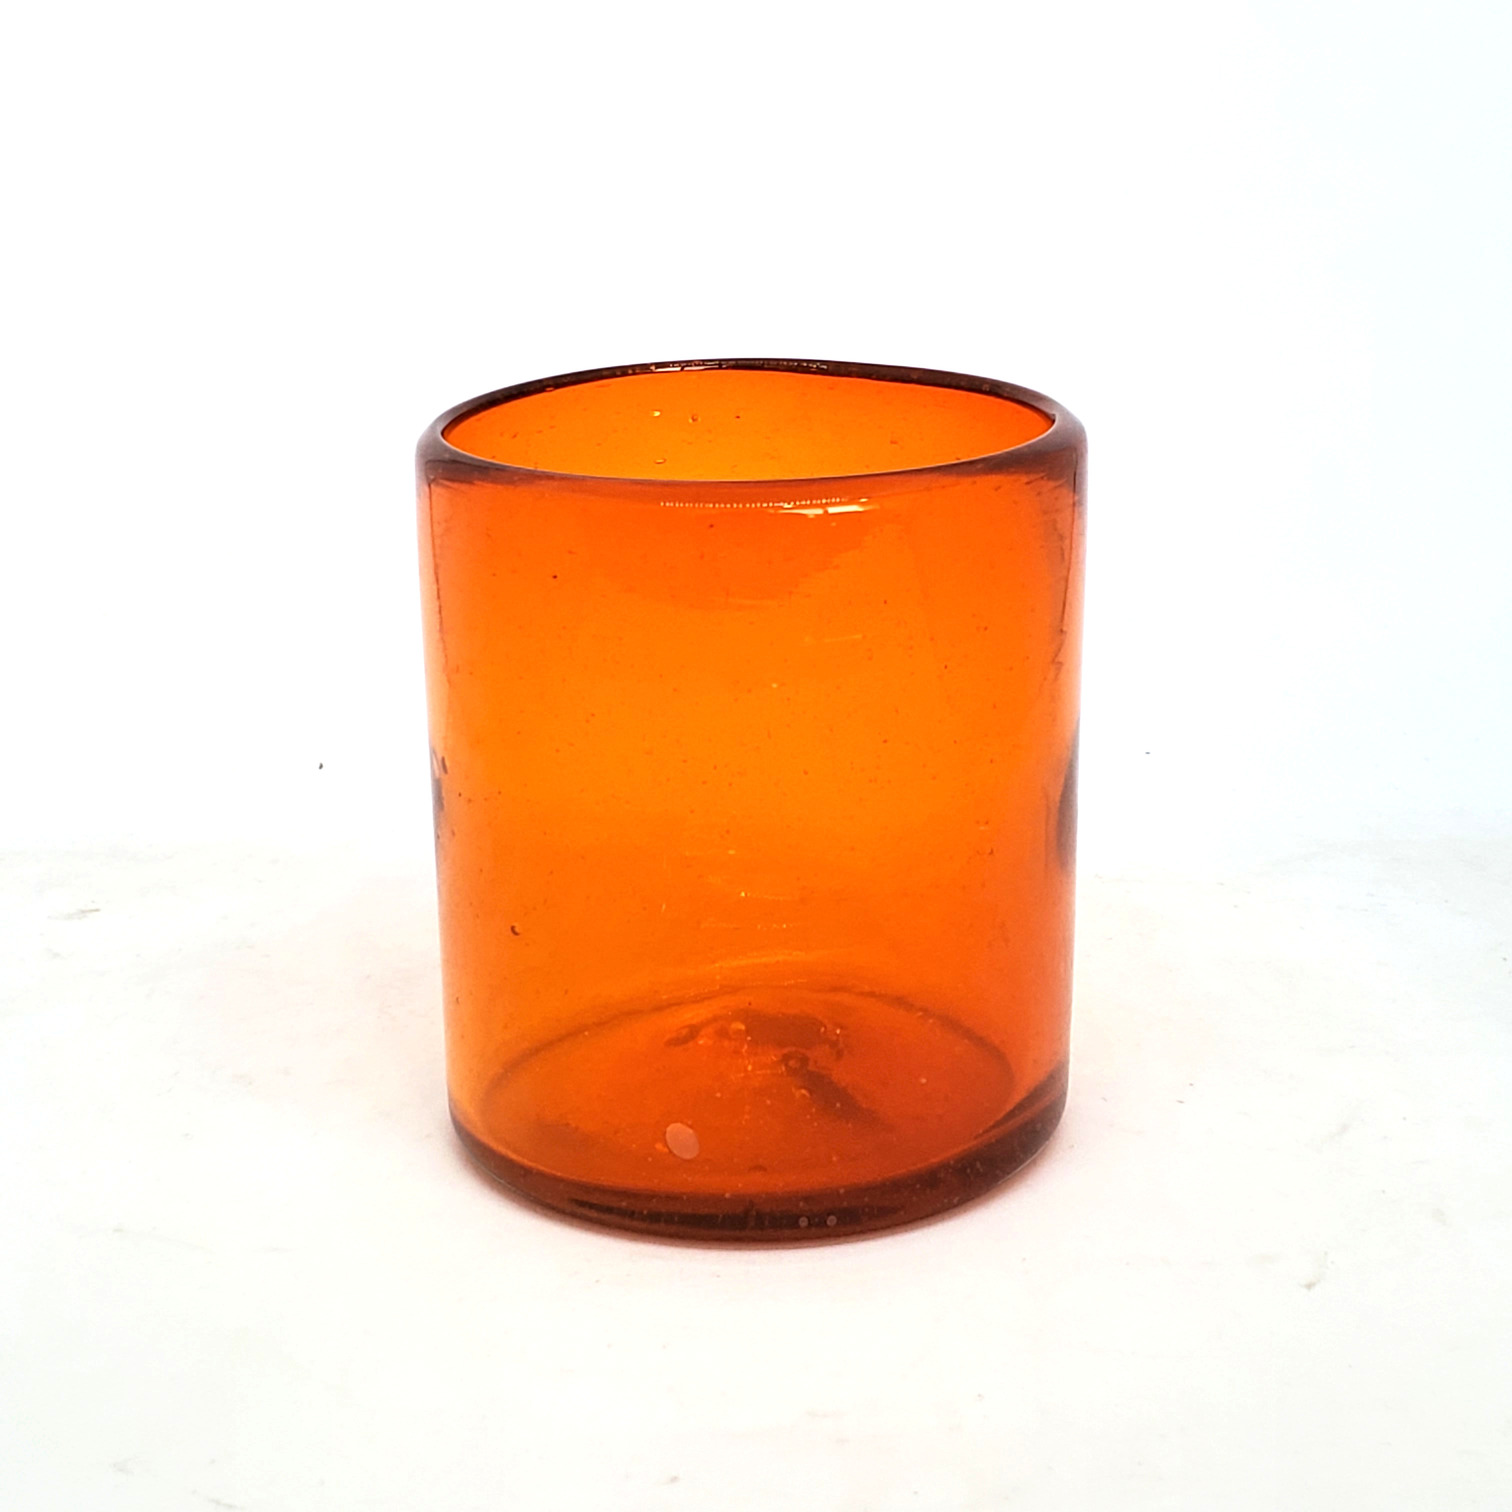 Colores Solidos al Mayoreo / s 9 oz color Naranja Sólido (set de 6) / Éstos artesanales vasos le darán un toque colorido a su bebida favorita.